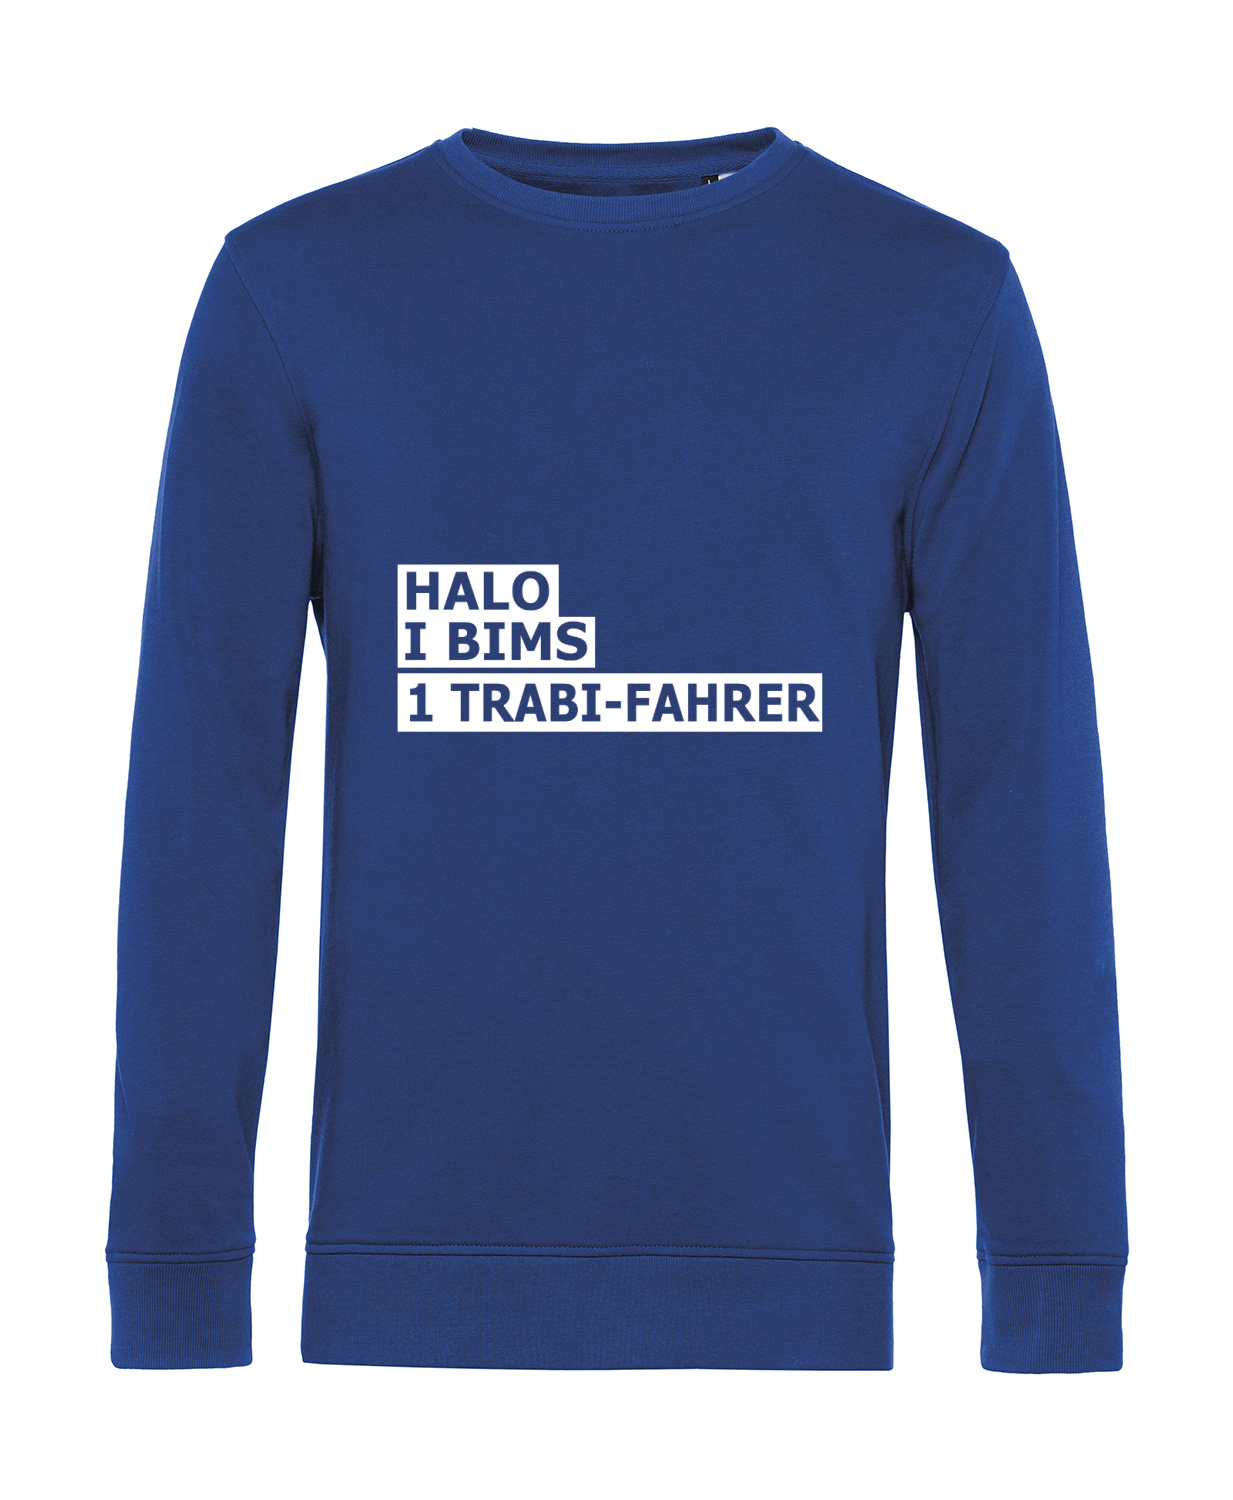 Nachhaltiges Sweatshirt Herren 2Takter - Halo I bims 1 Trabi-Fahrer